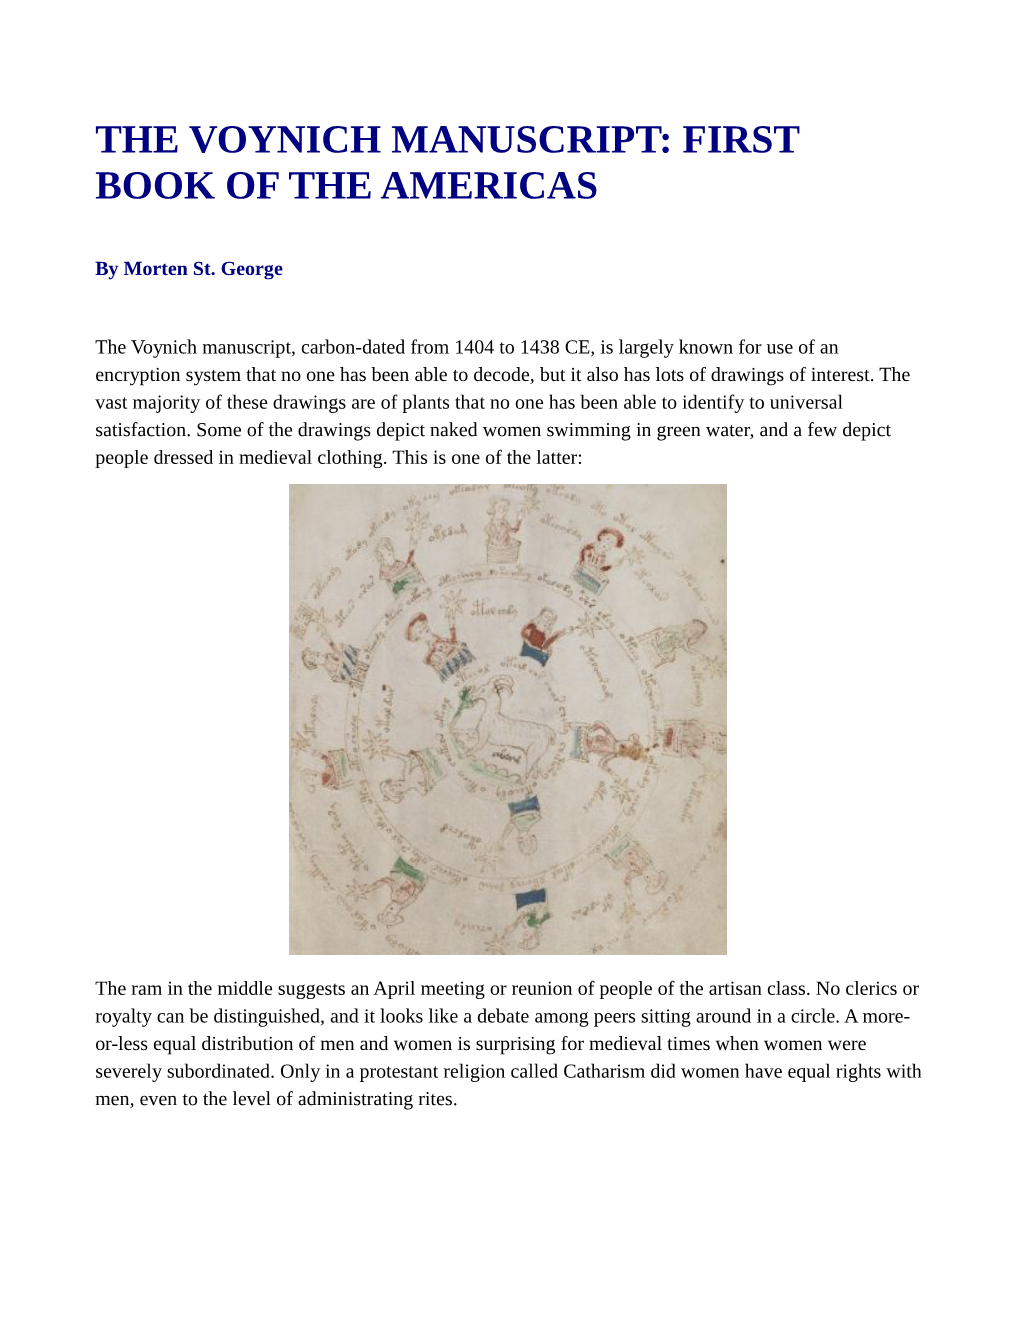 The Voynich Manuscript: First Book of the Americas